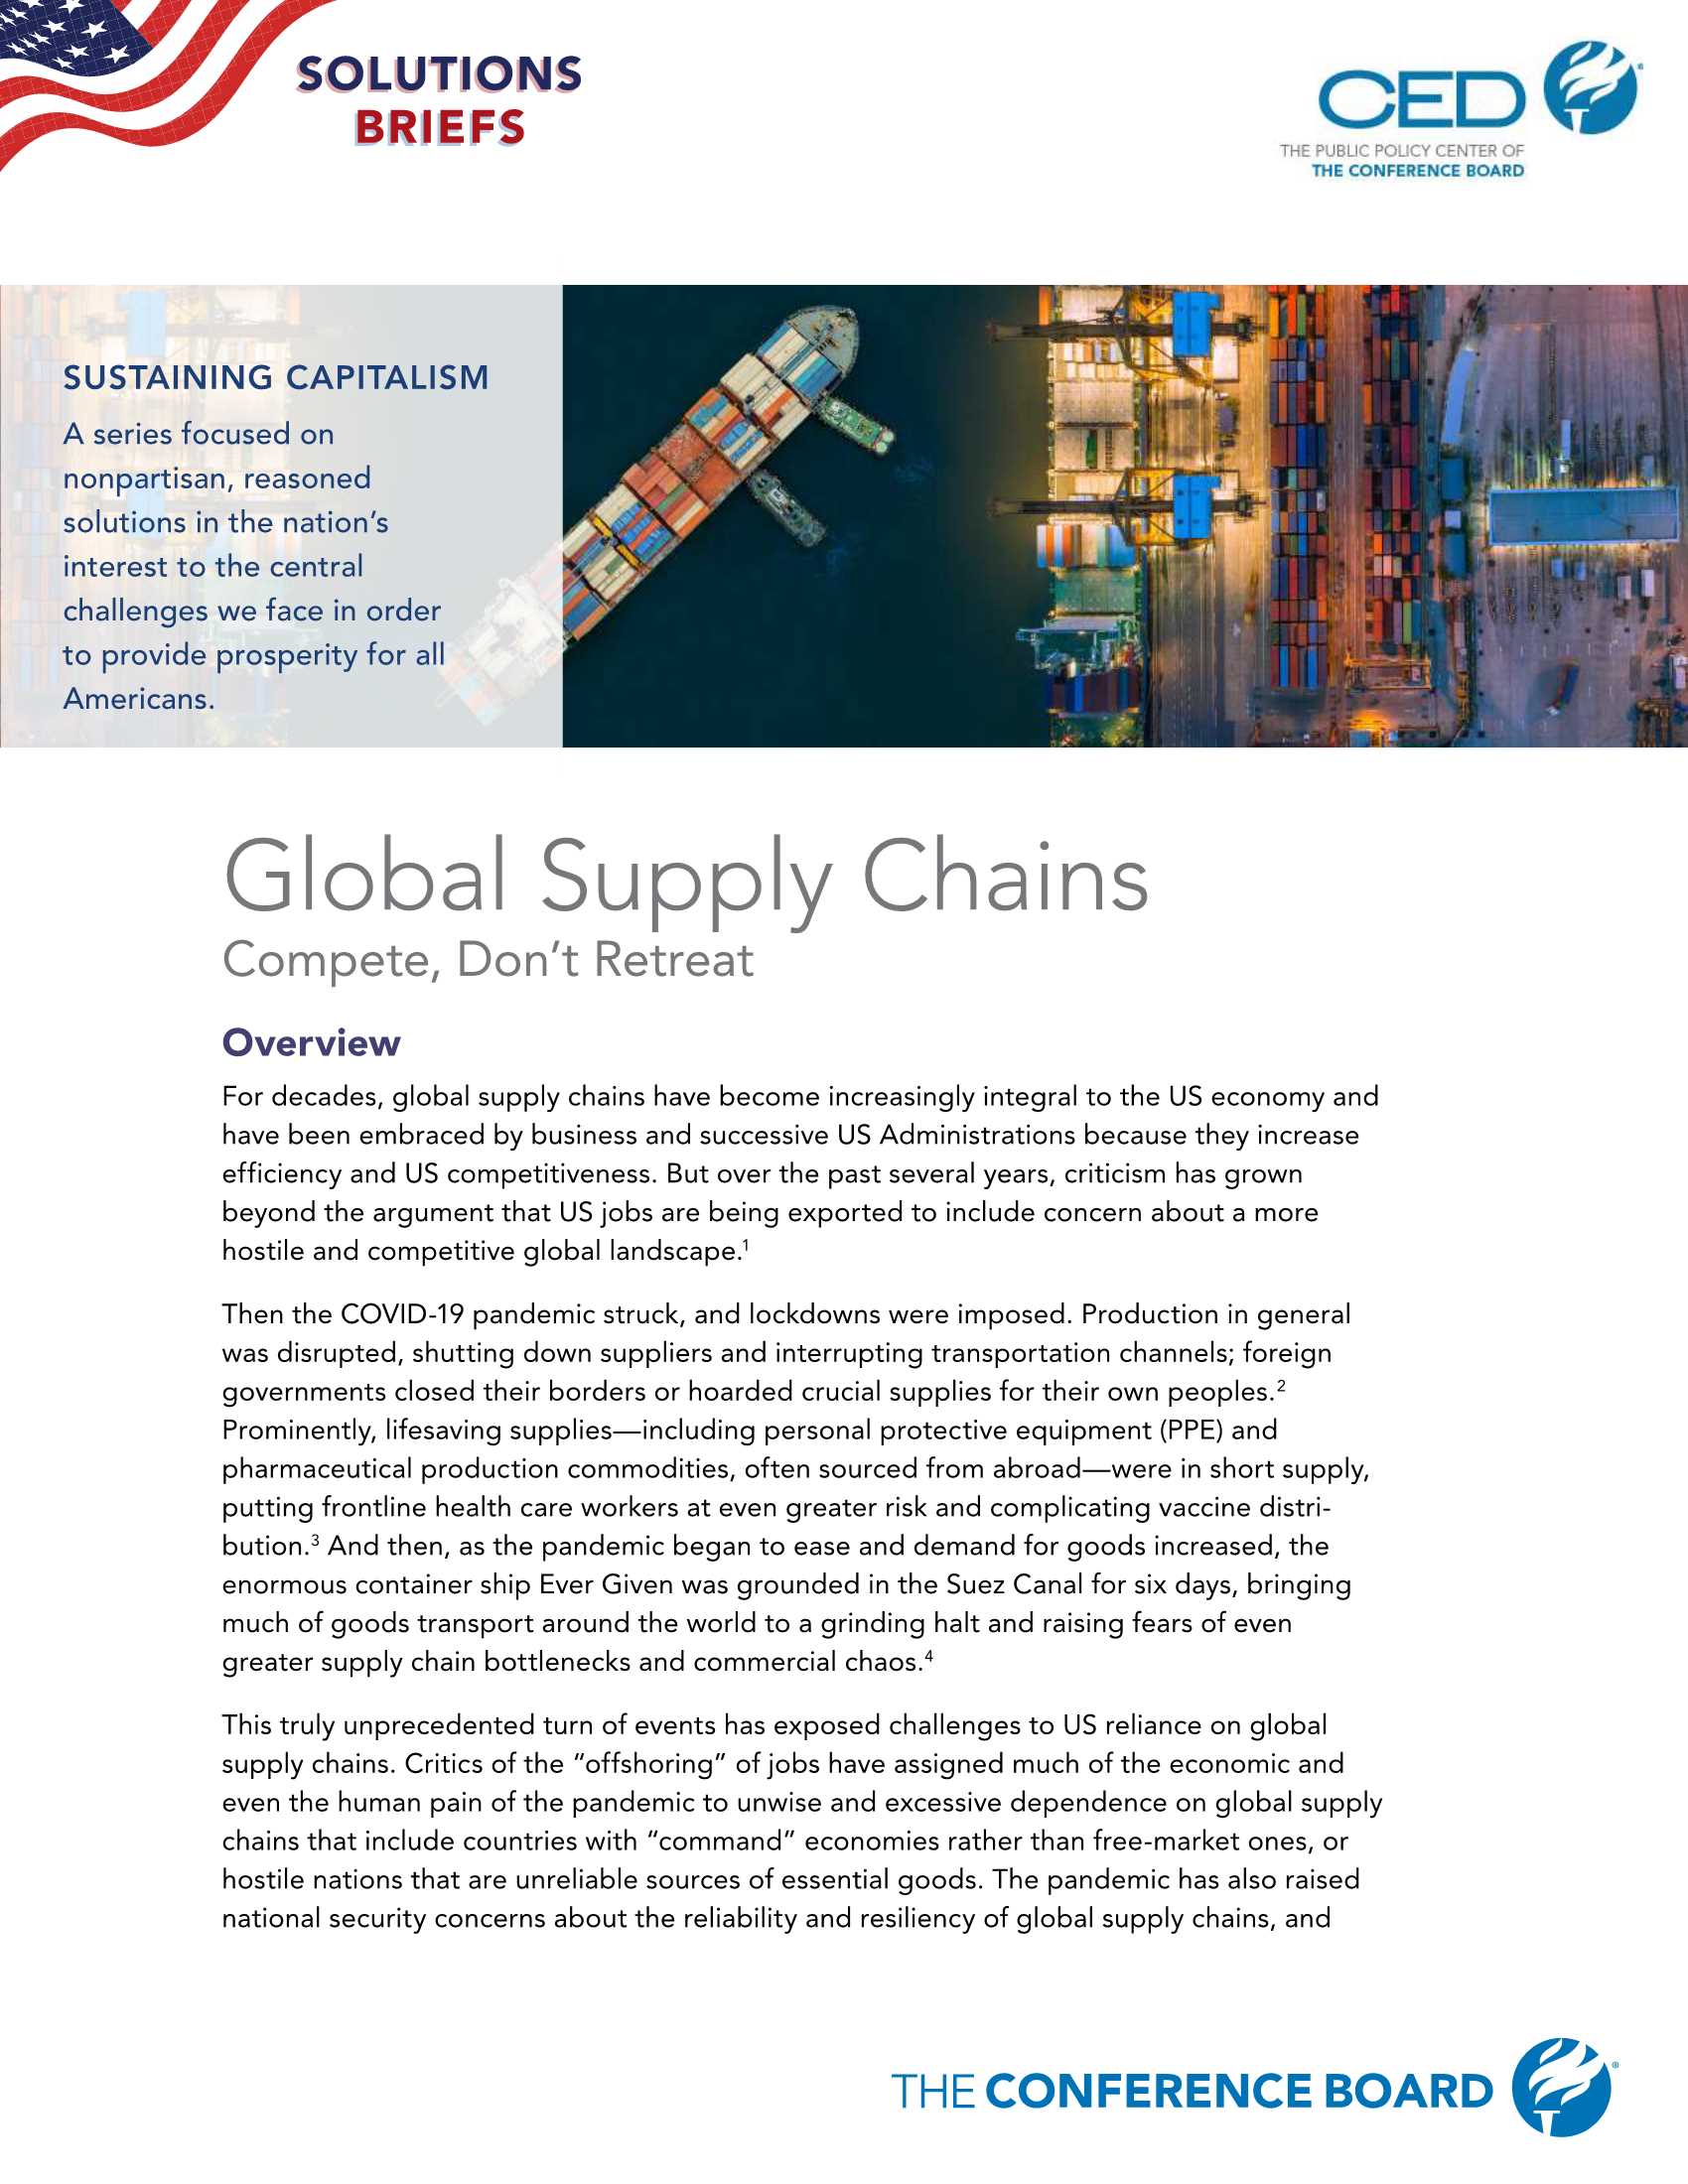 CED-全球供应链-竞争，不退缩（英）-2021.07-14页